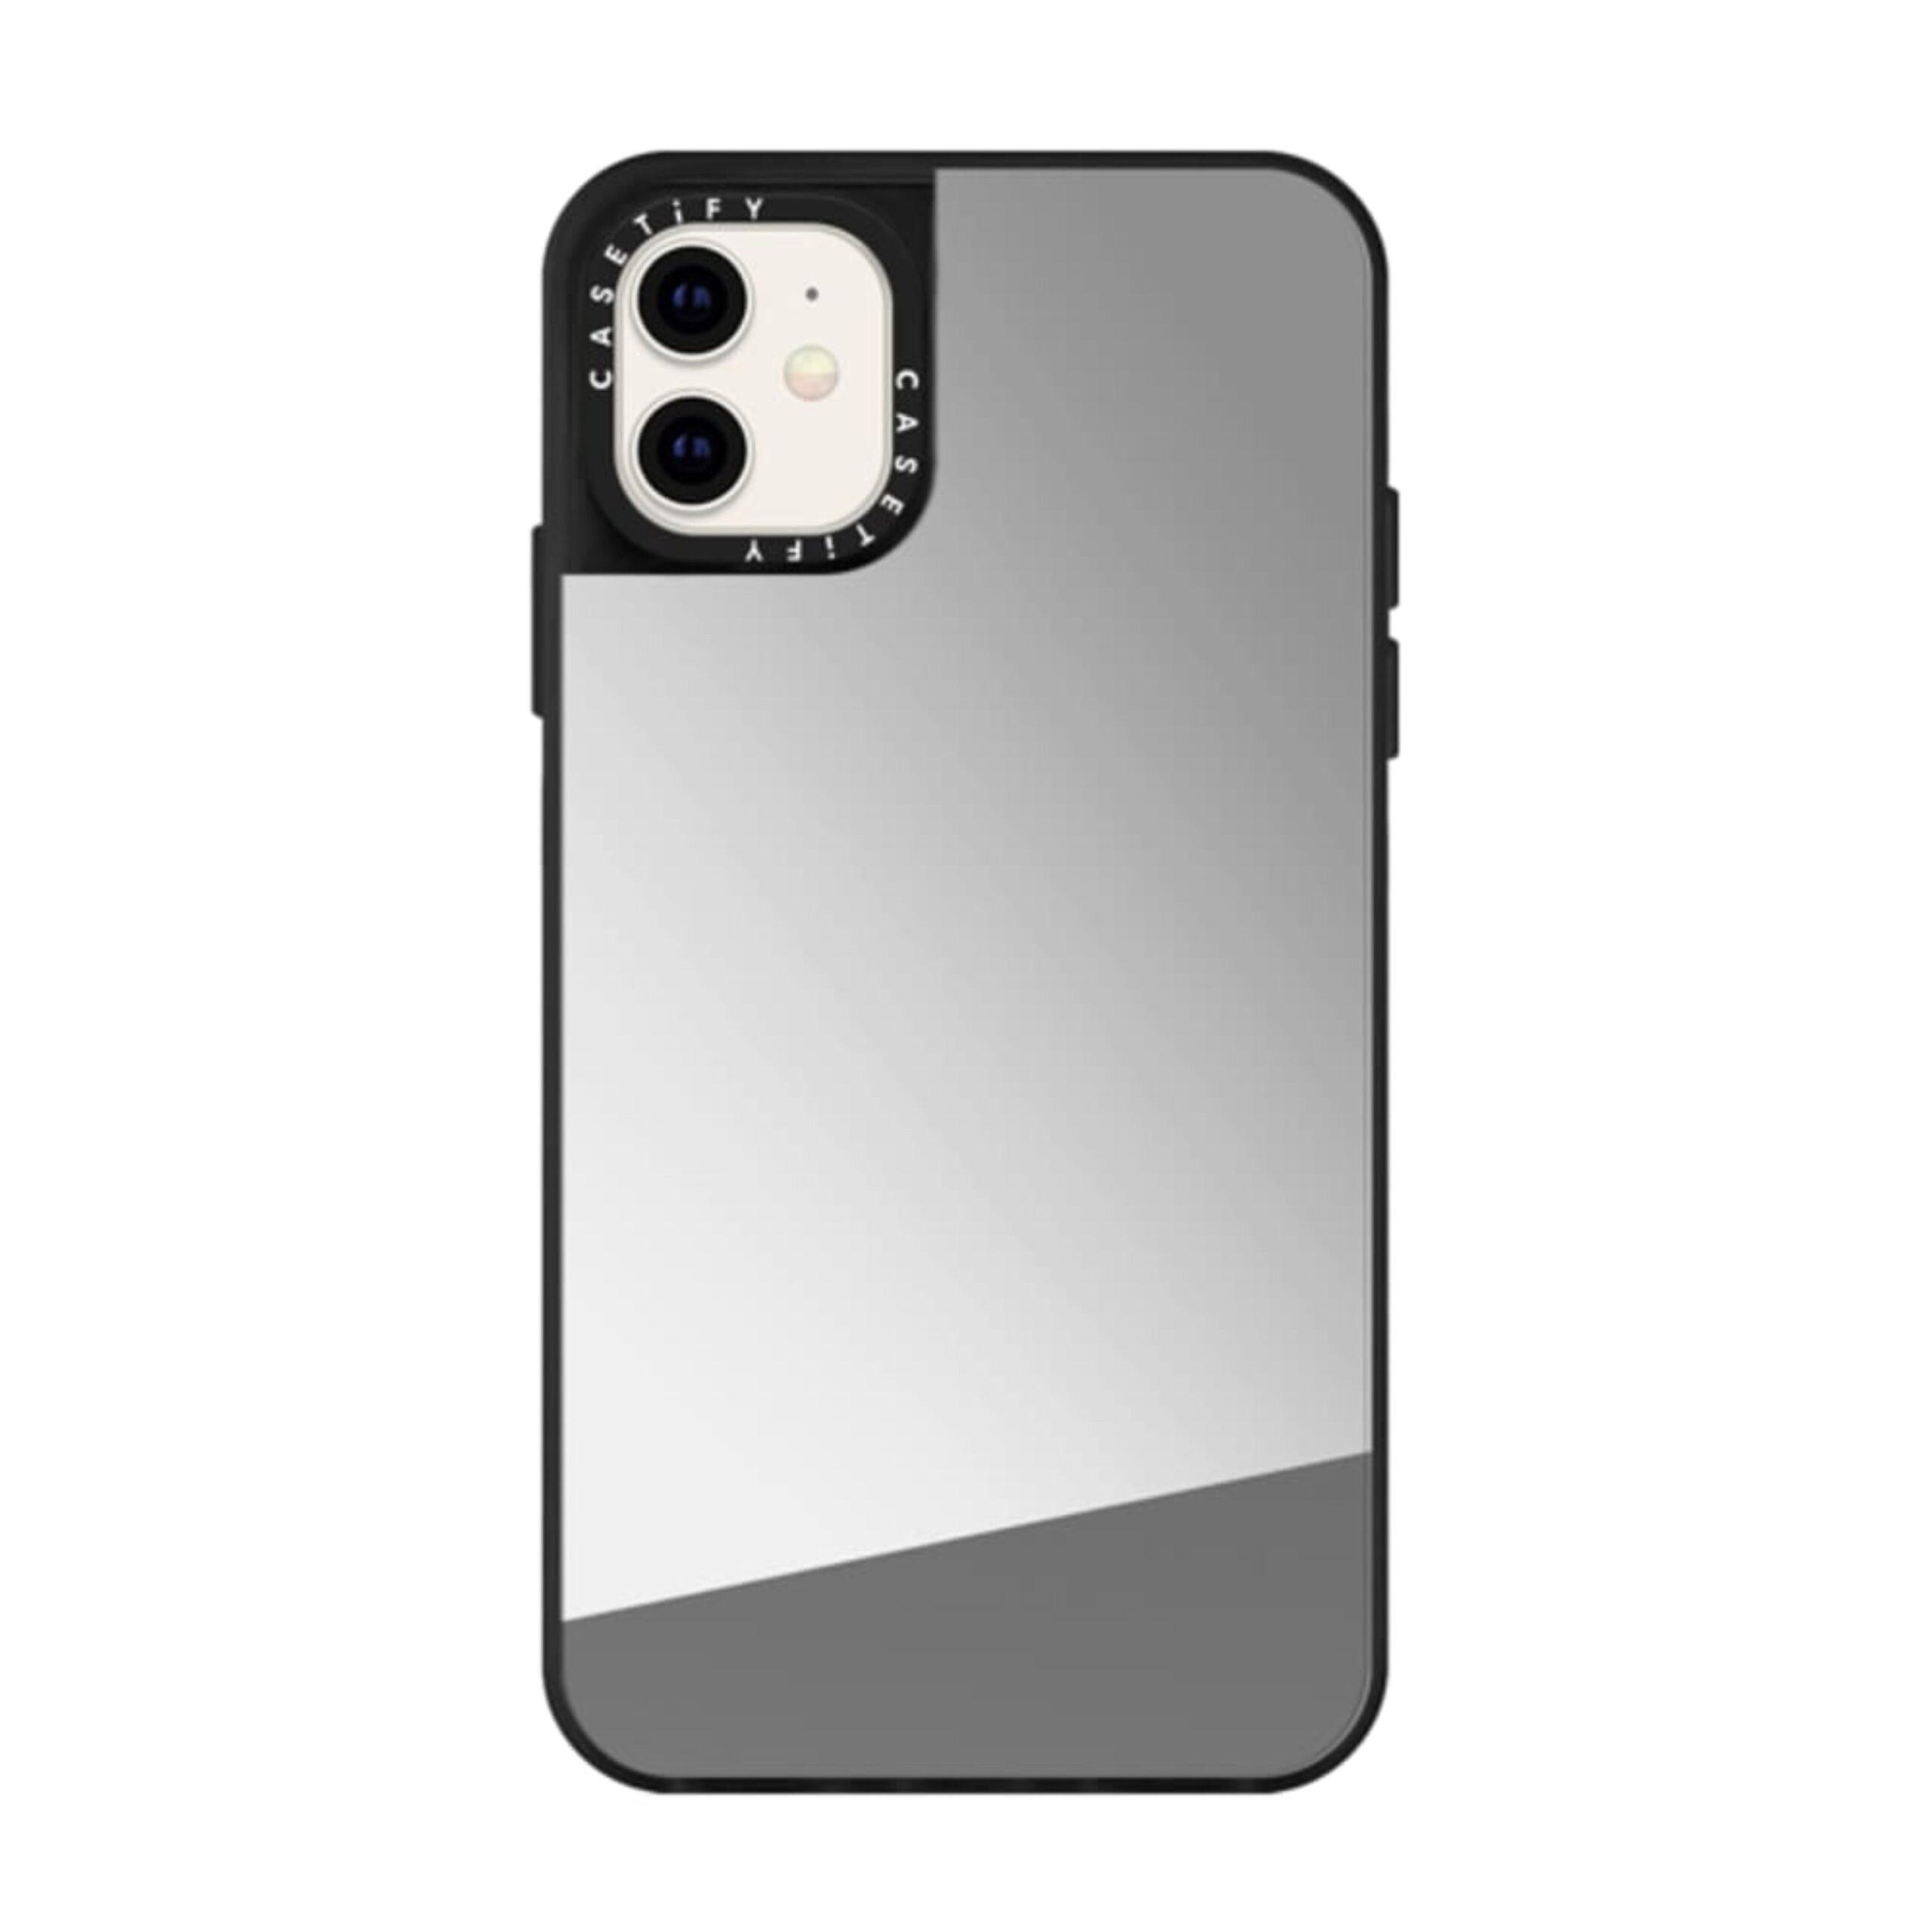 كفر آيفون بخلفية مرآة يدعم MagSafe و الشحن اللاسلكي  Casetify MIRROR Apple iPhone 12 Mini Case